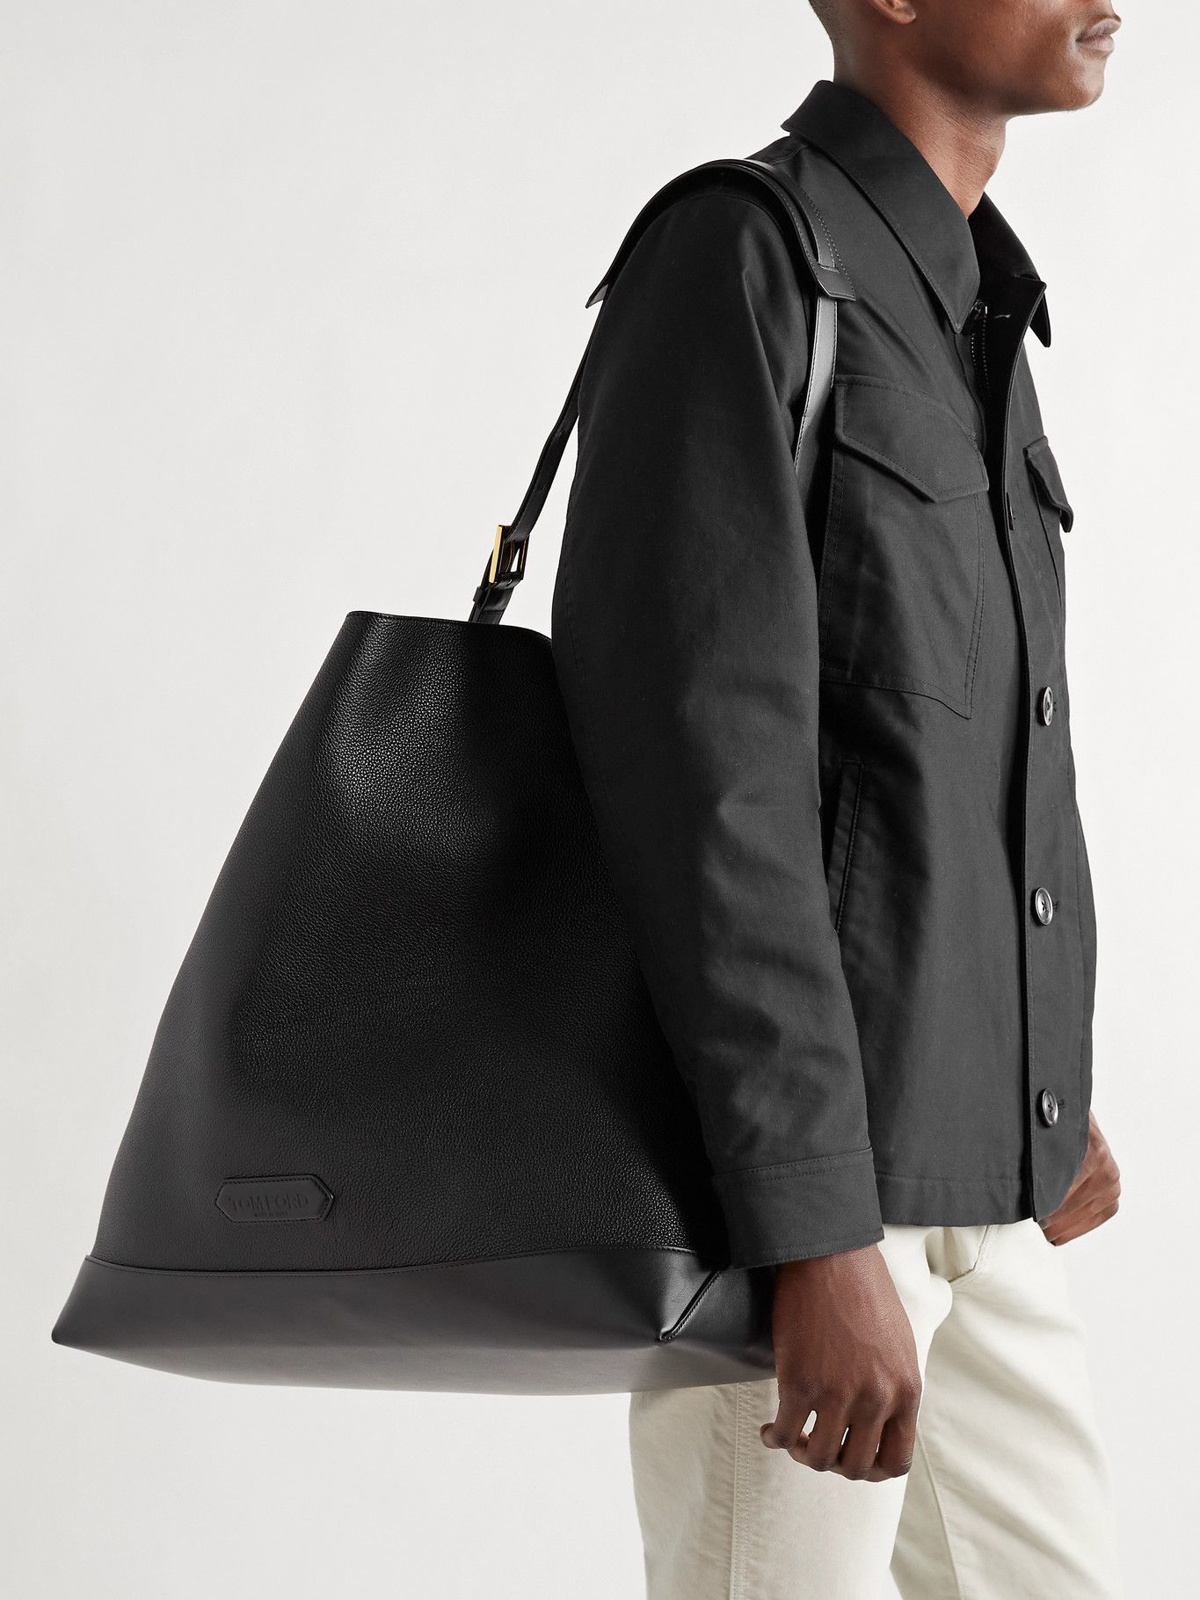 Tom Ford Men's Plain Leather Bag